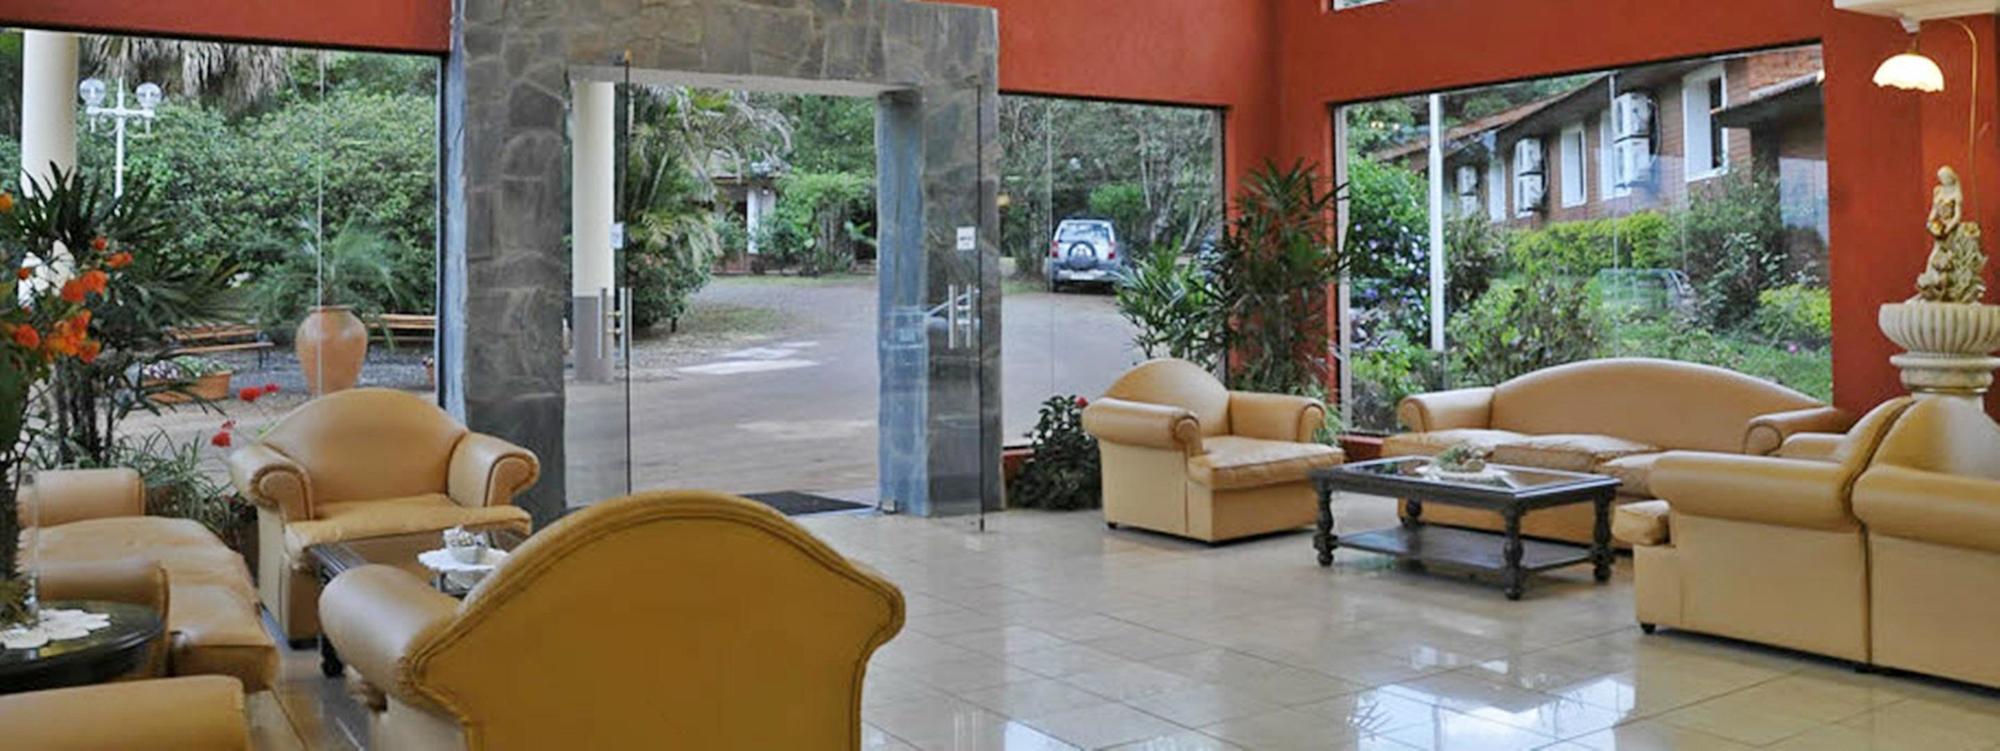 Orquideas Hotel & Cabanas Puerto Iguazú Exterior foto